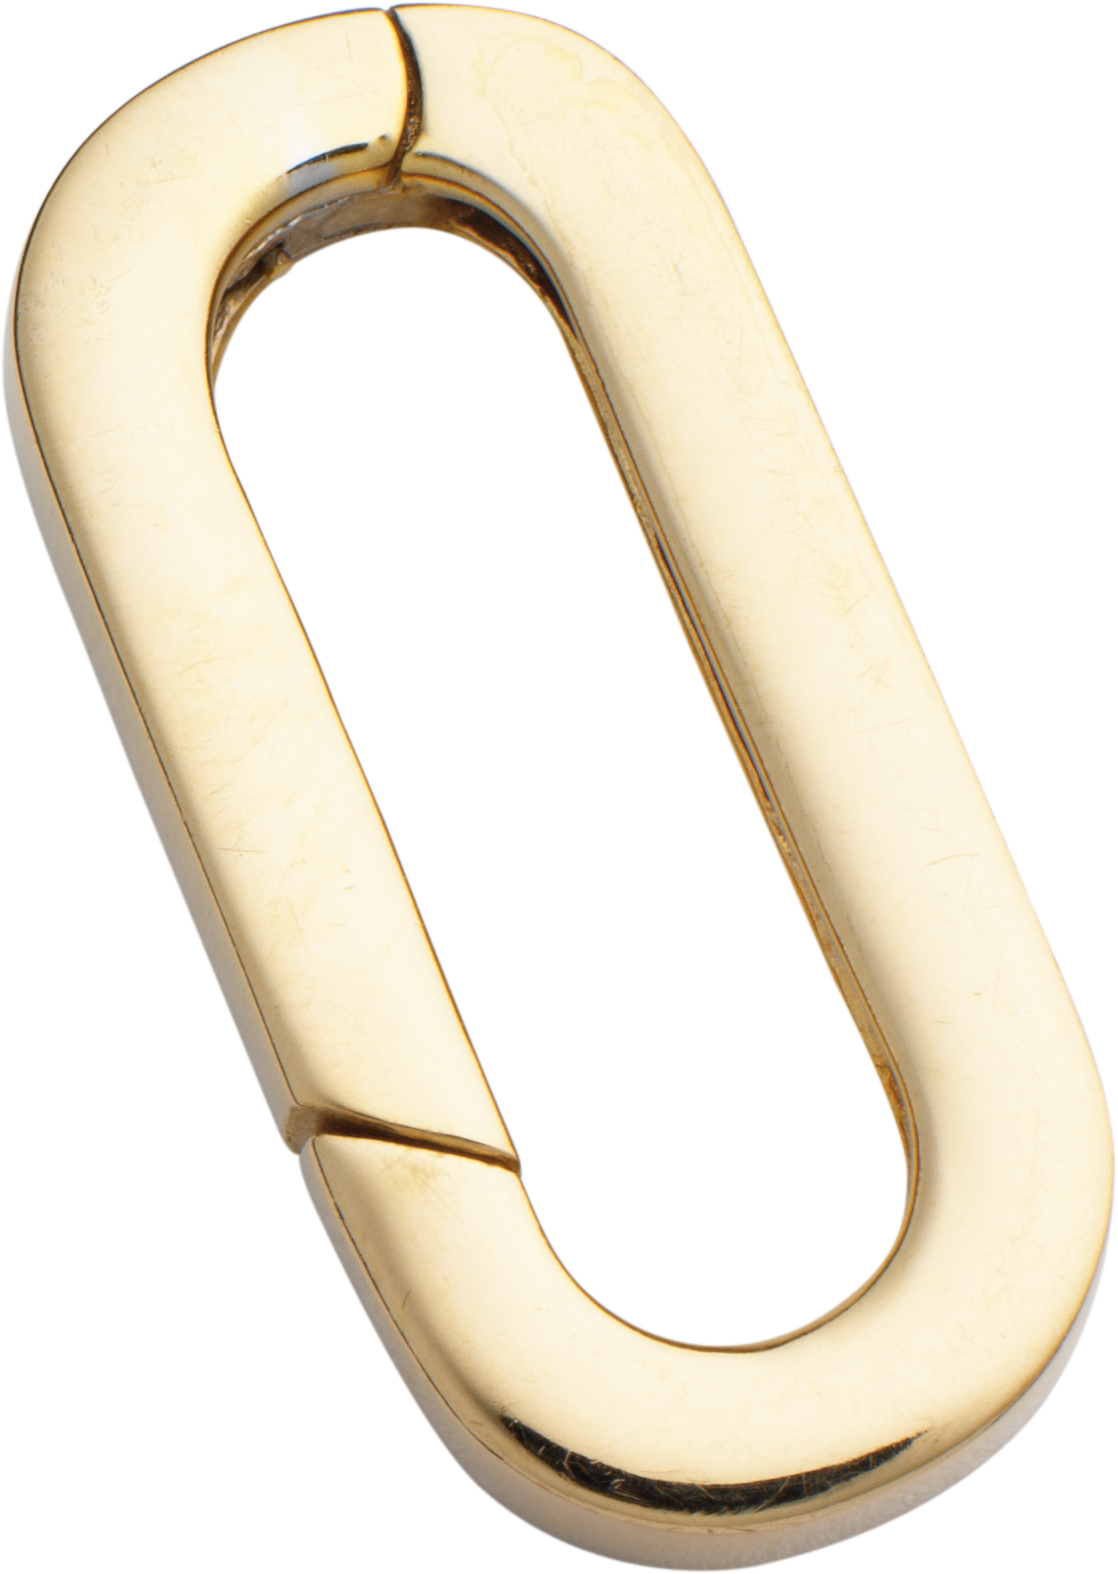 Chain clip gold 585/-Gg, oval L 23.00 x W 11.00mm